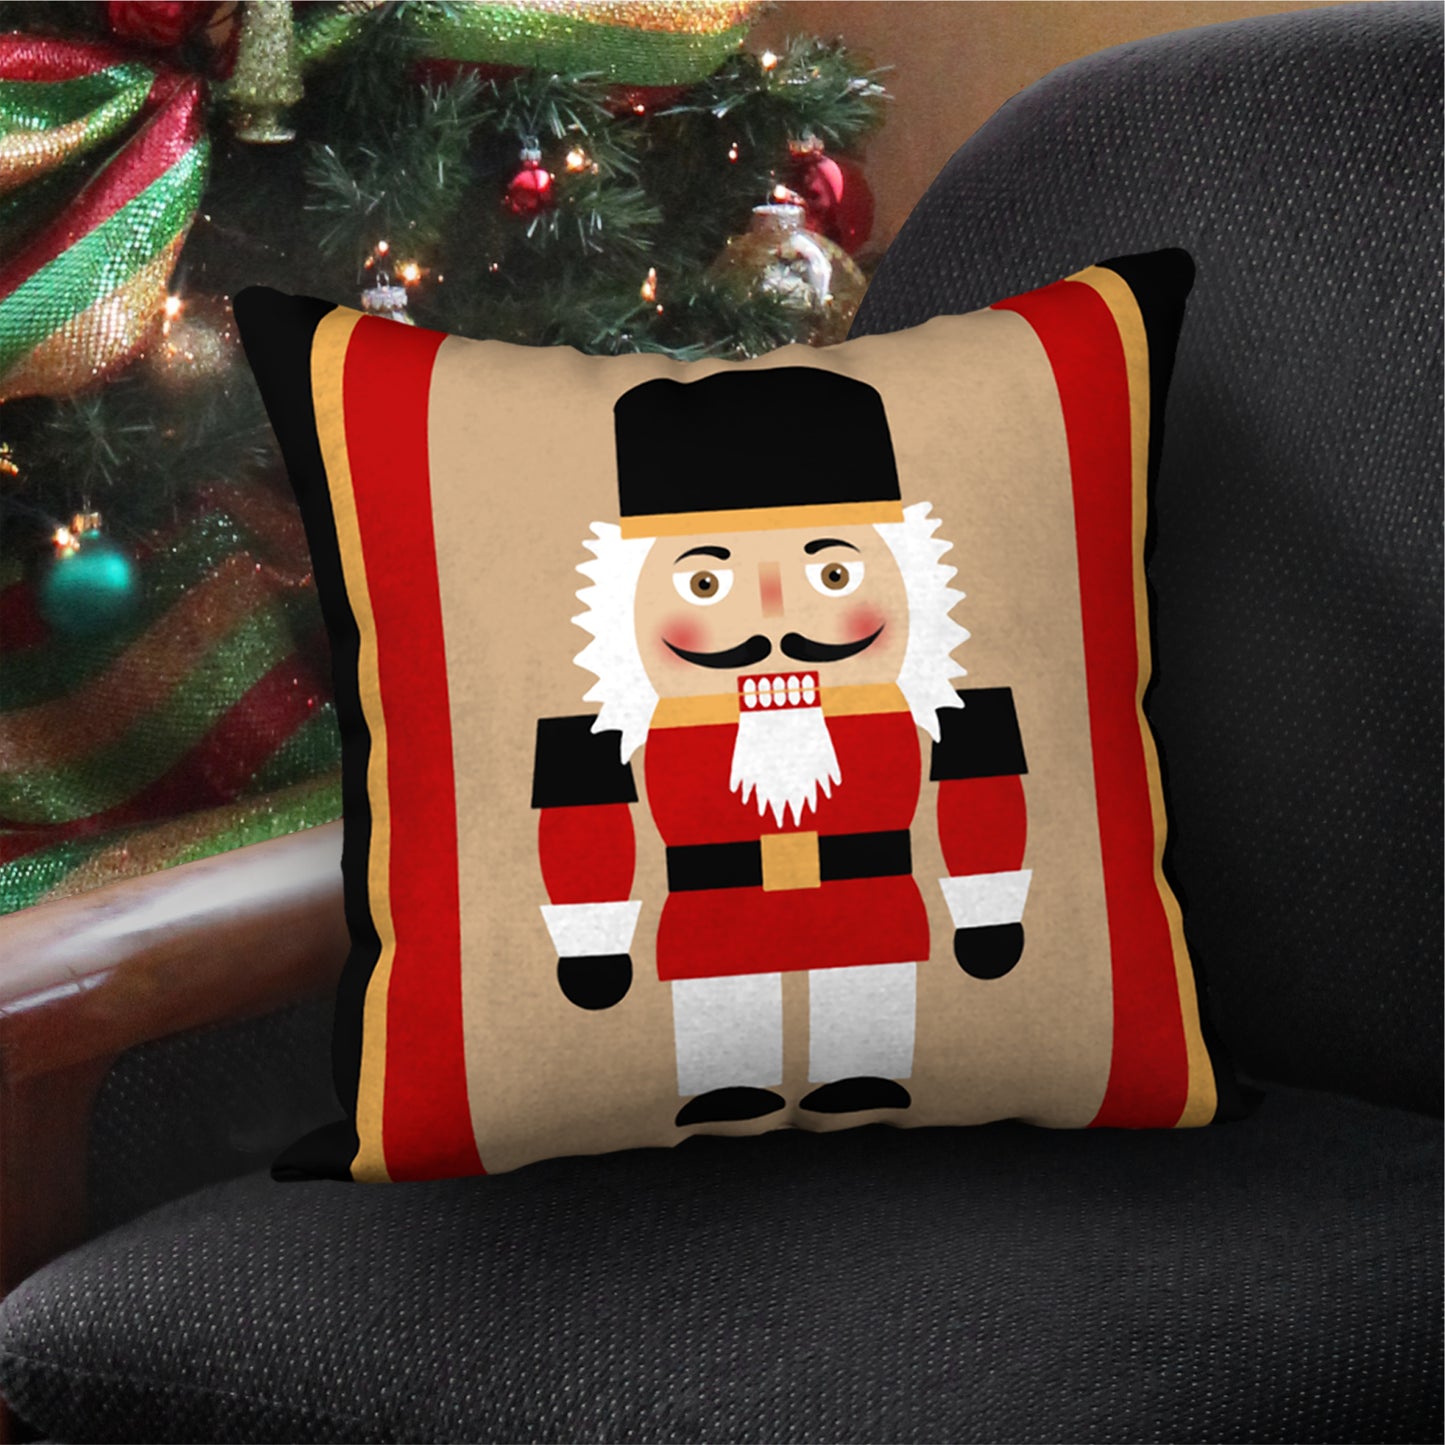 Nutcracker Royal Guard Designer Holiday Pillow, 18"x18"